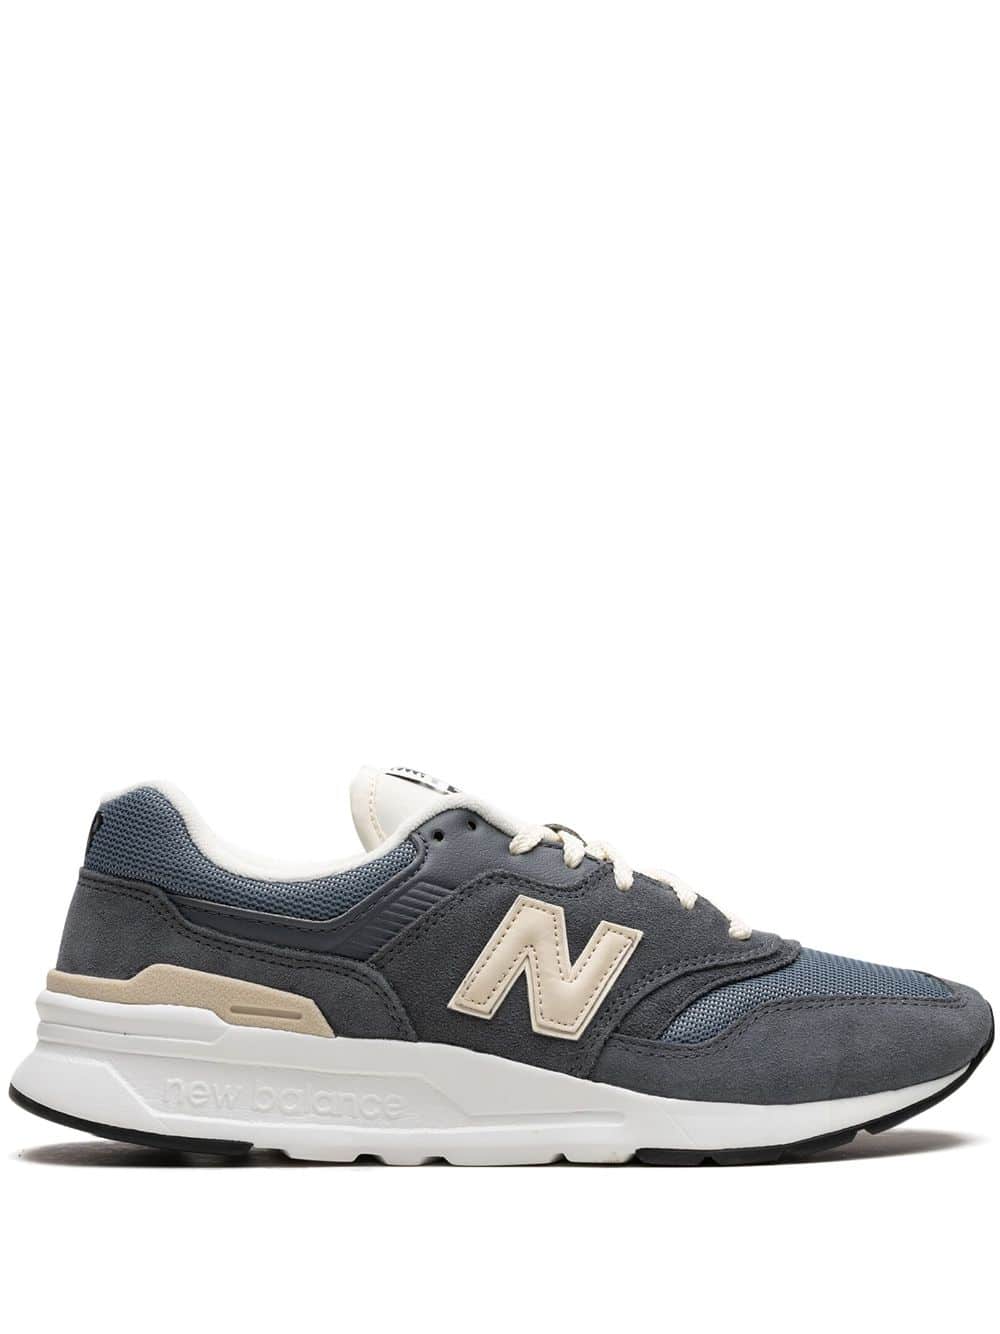 New Balance "997 ""Graphite"" sneakers" - Blauw